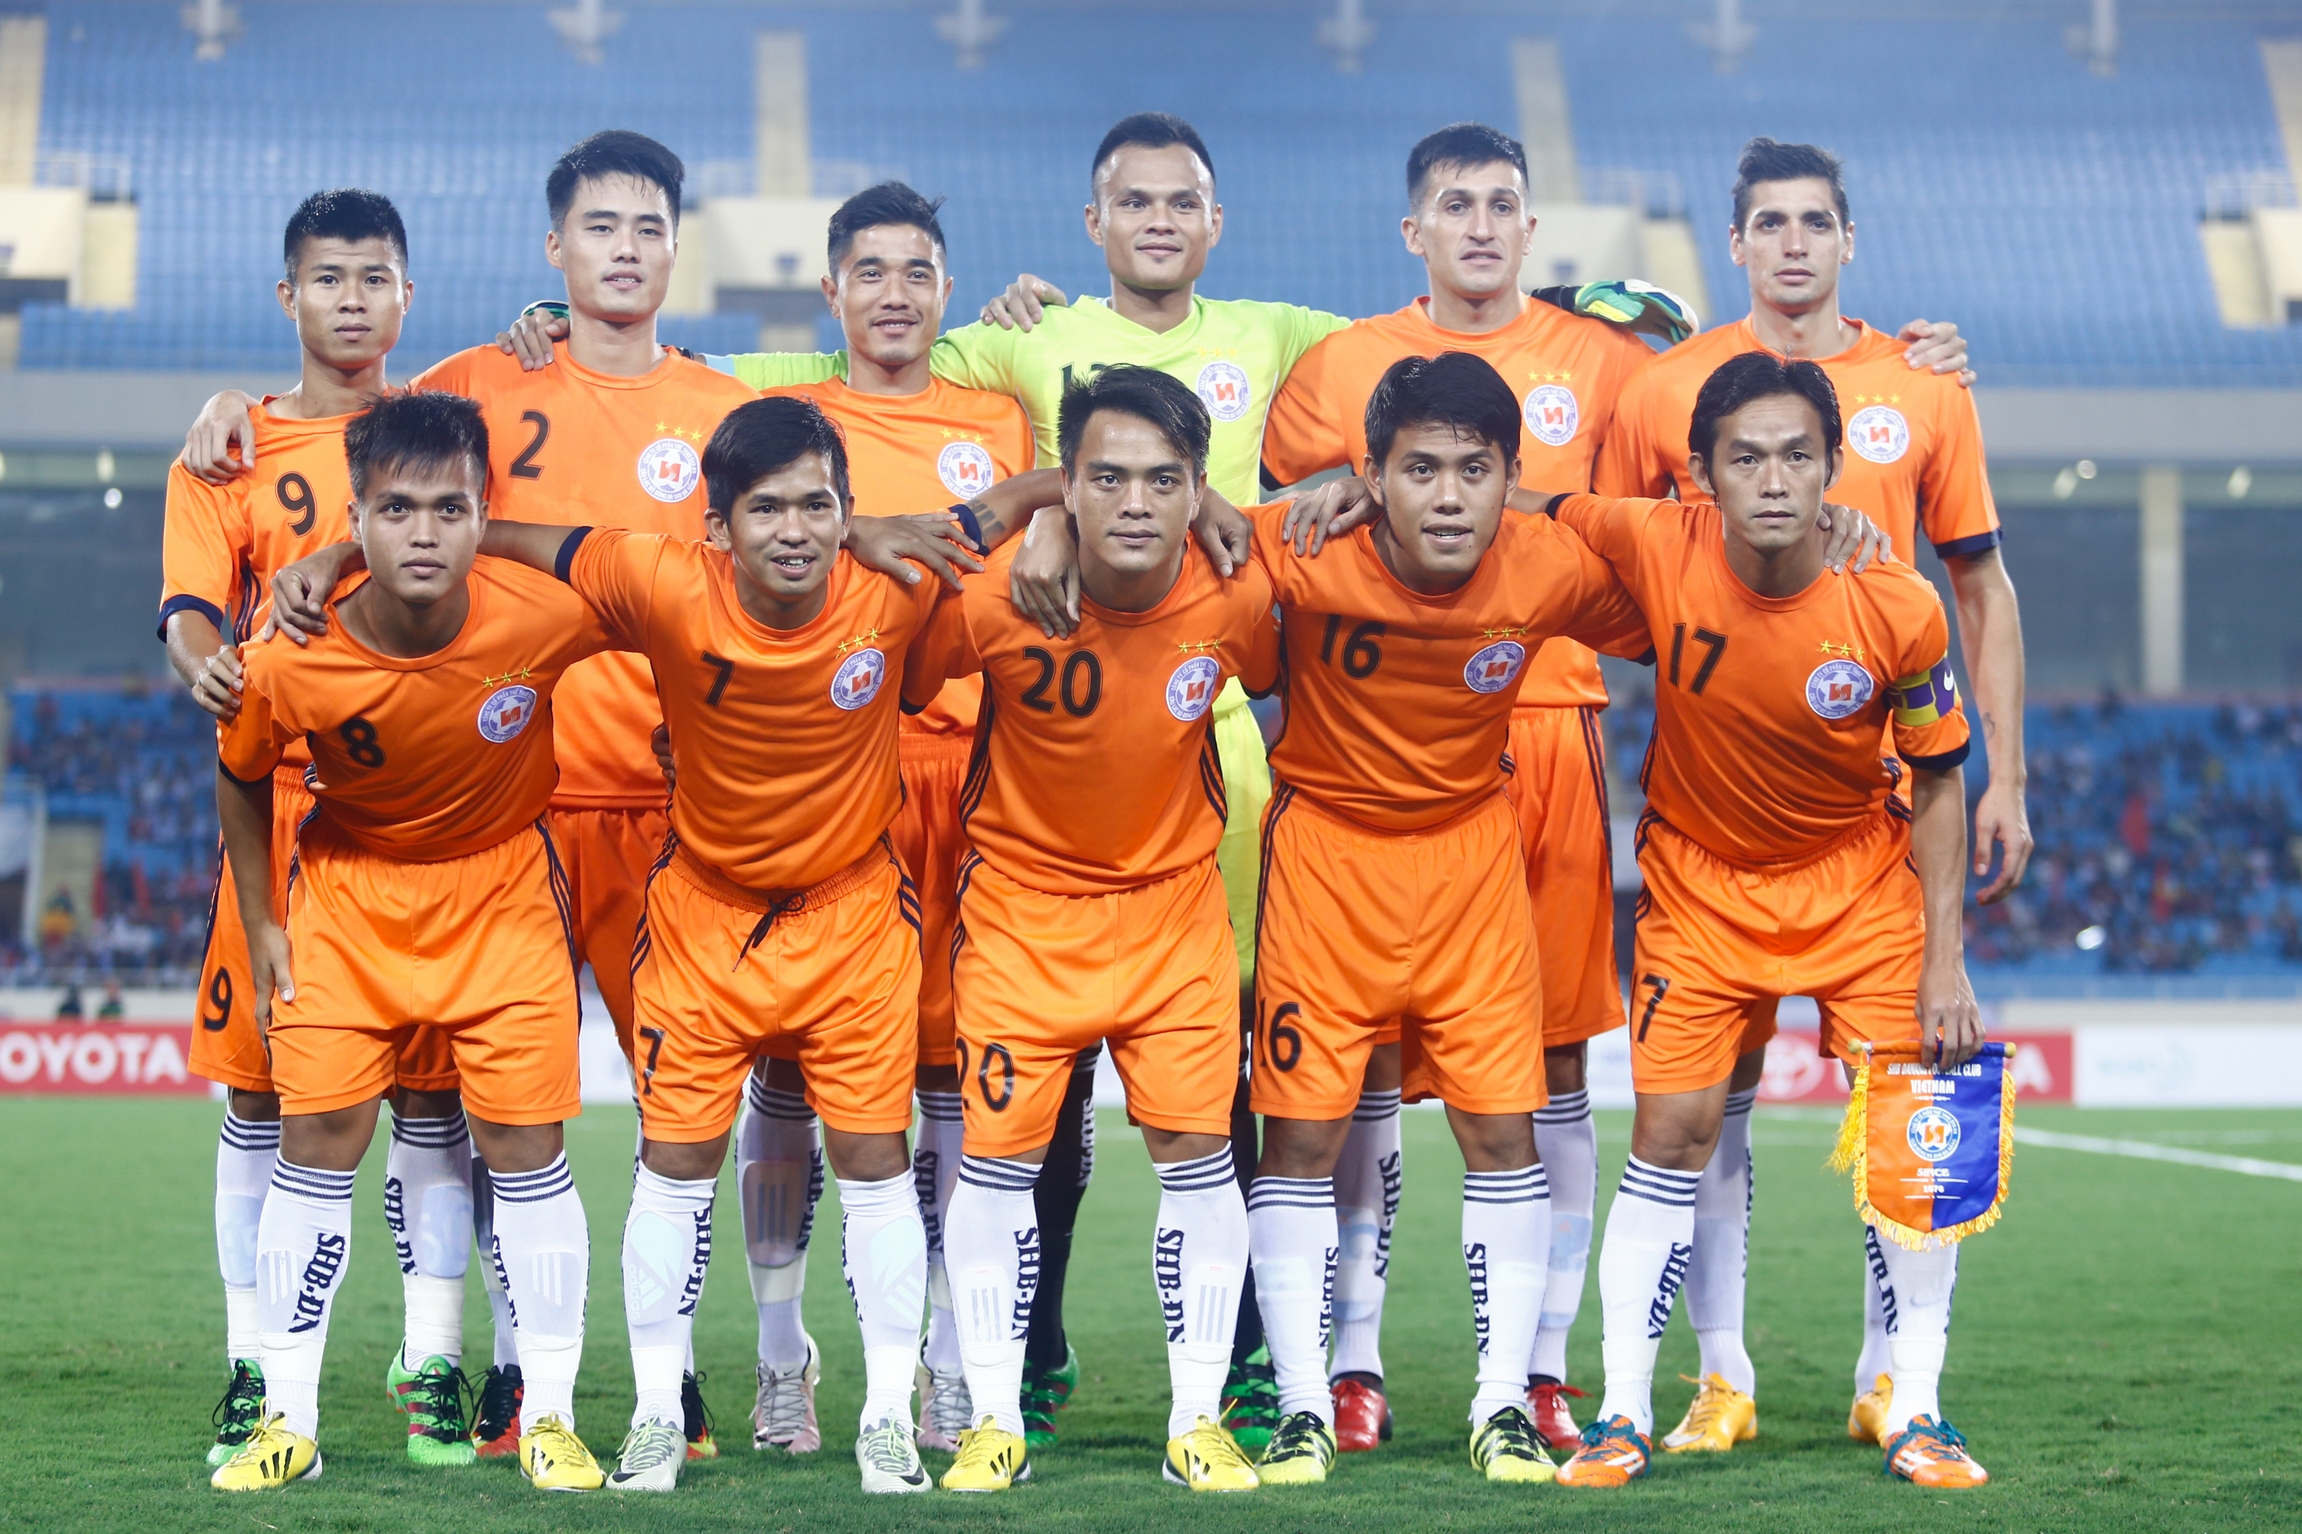 Sắp khởi tranh Cup bóng đá Toyota các câu lạc bộ vô địch quốc gia khu vực sông Mê Kông